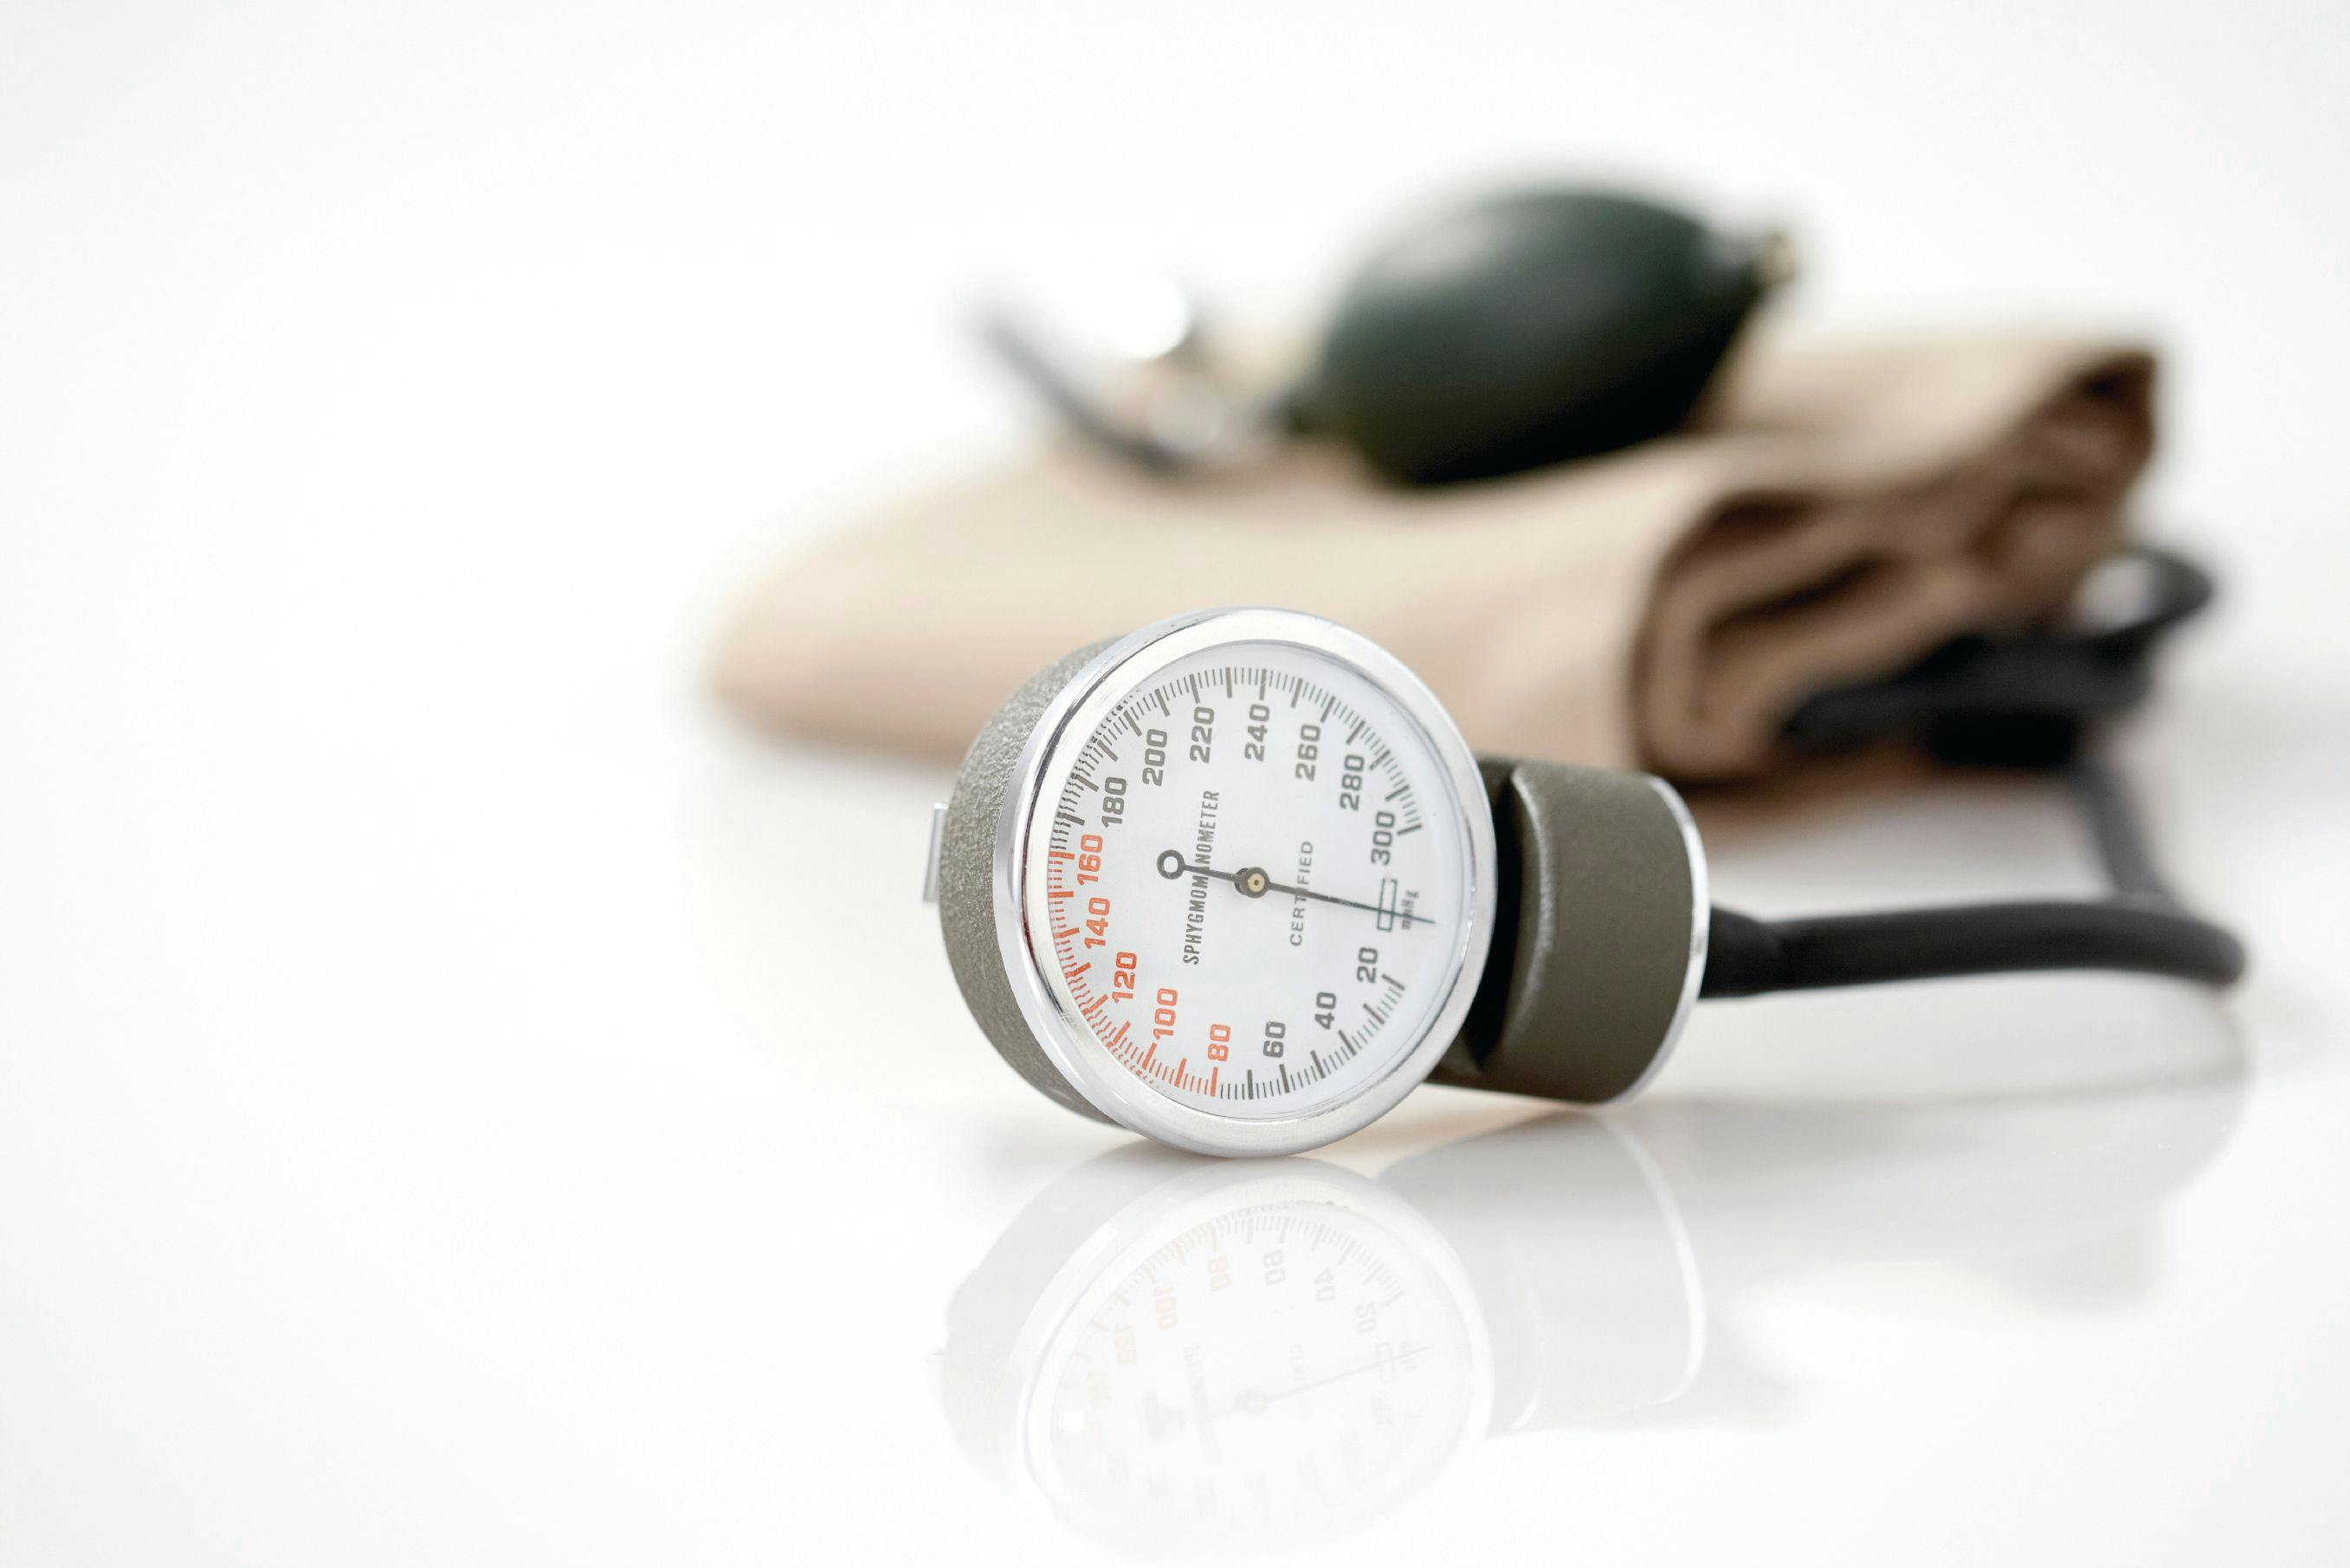 Close-up image of a blood pressure cuff